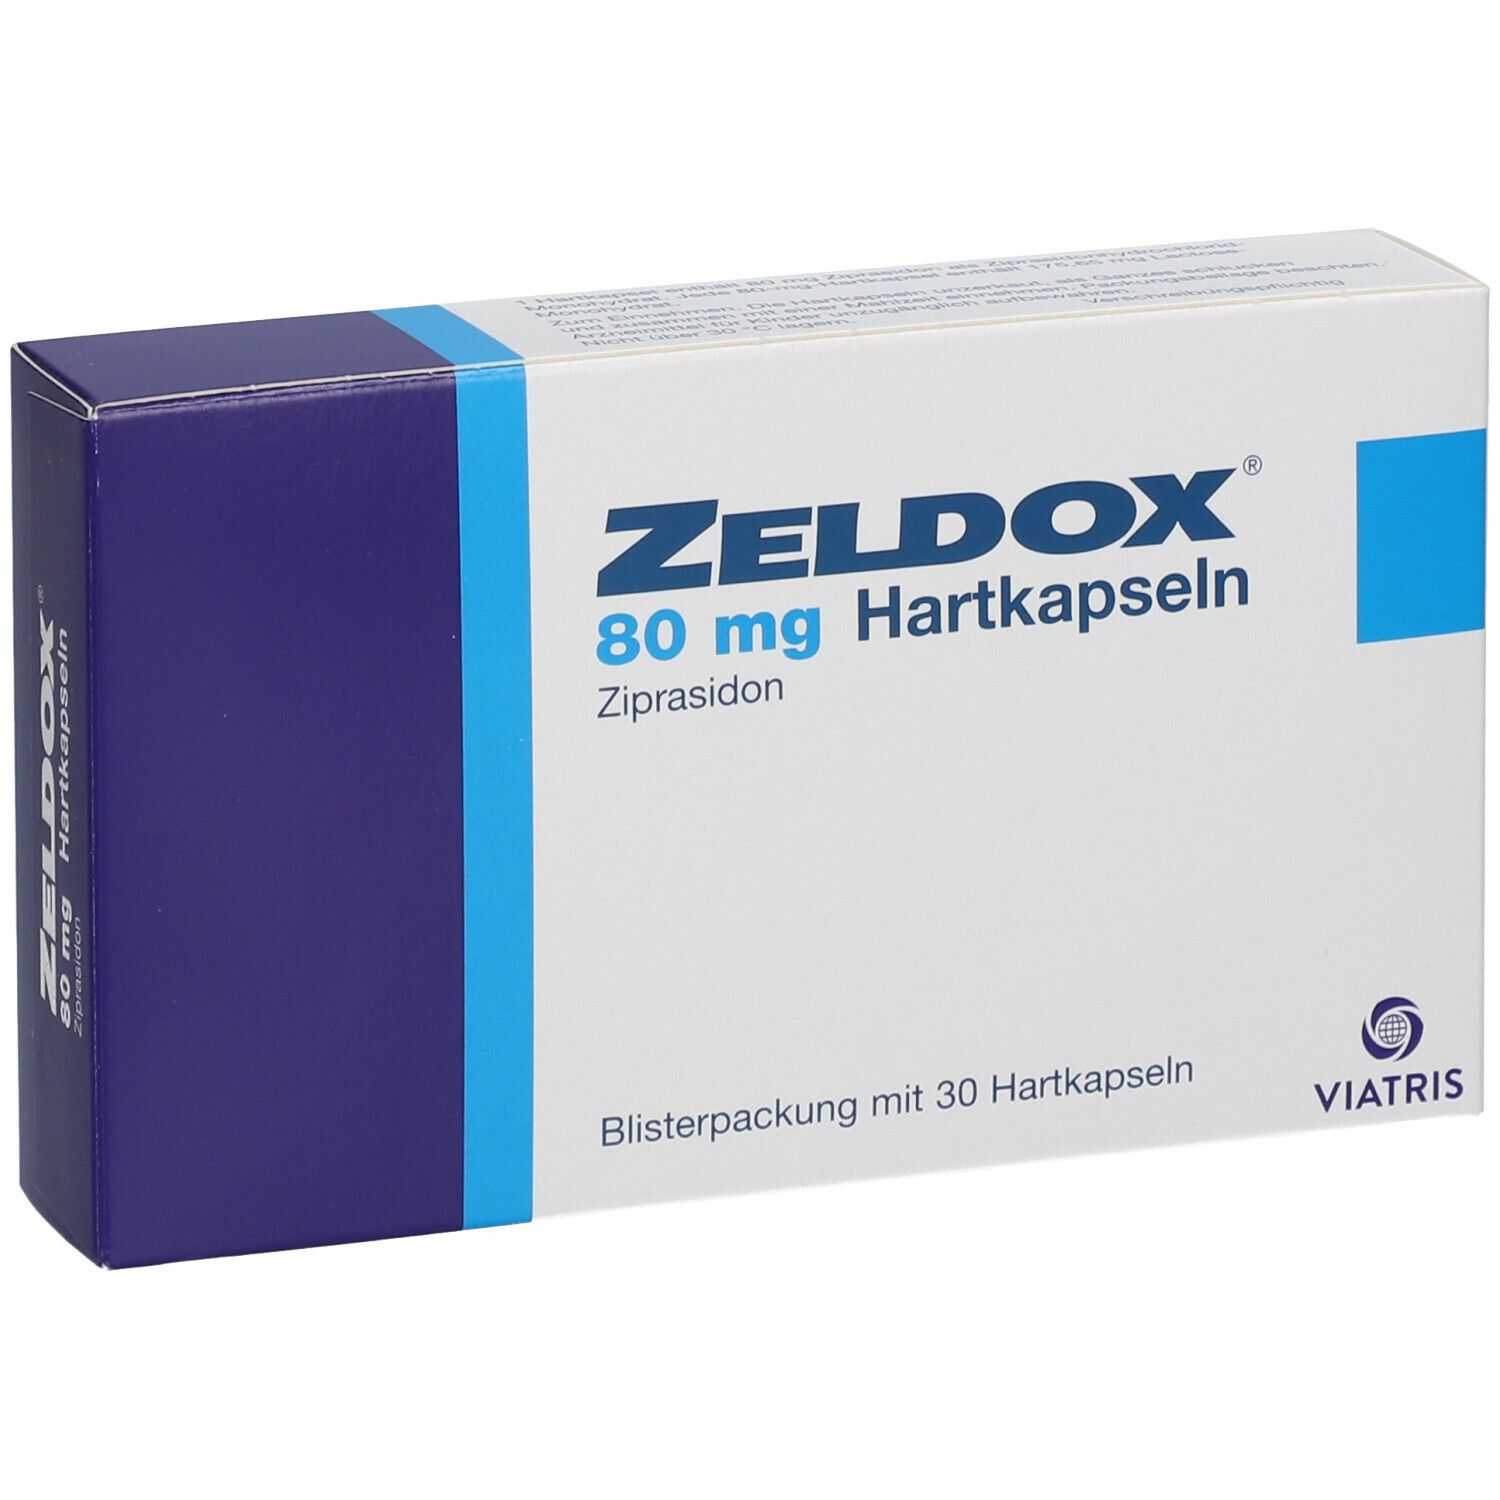 Zeldox® 80 mg